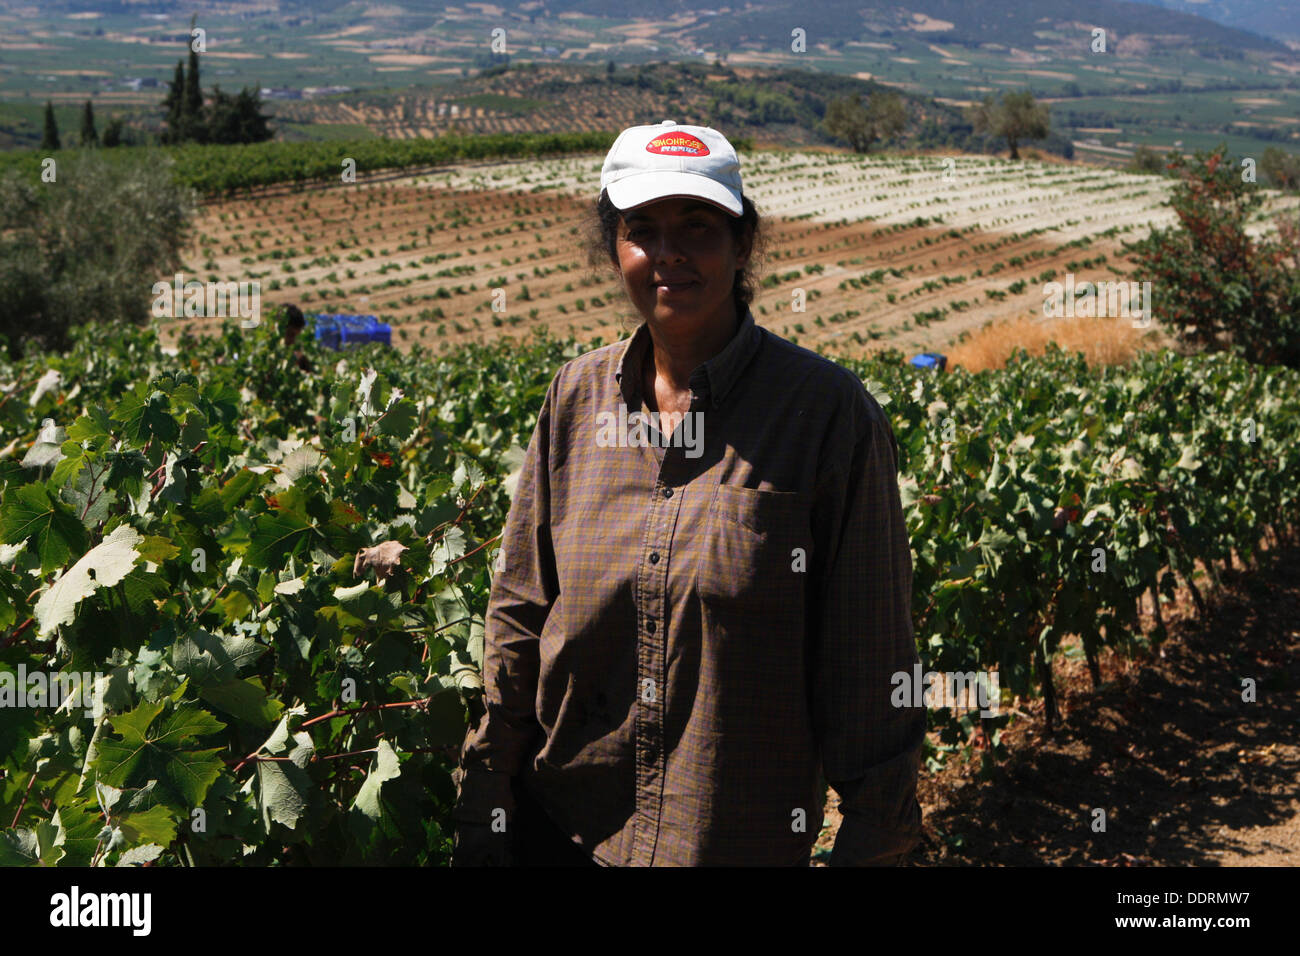 Les travailleurs étrangers, pour la plupart des albanais et roumains, recueillir les raisins des champs. La région de Némée. dans le Péloponnèse, a une tradition viticole, de l'antiquité et le vin mémorable d'Fliasion à l'Aghiorghitiko exquis, le vin grec qui a gagné l'admiration de tous les amateurs de vin à travers le monde. Banque D'Images